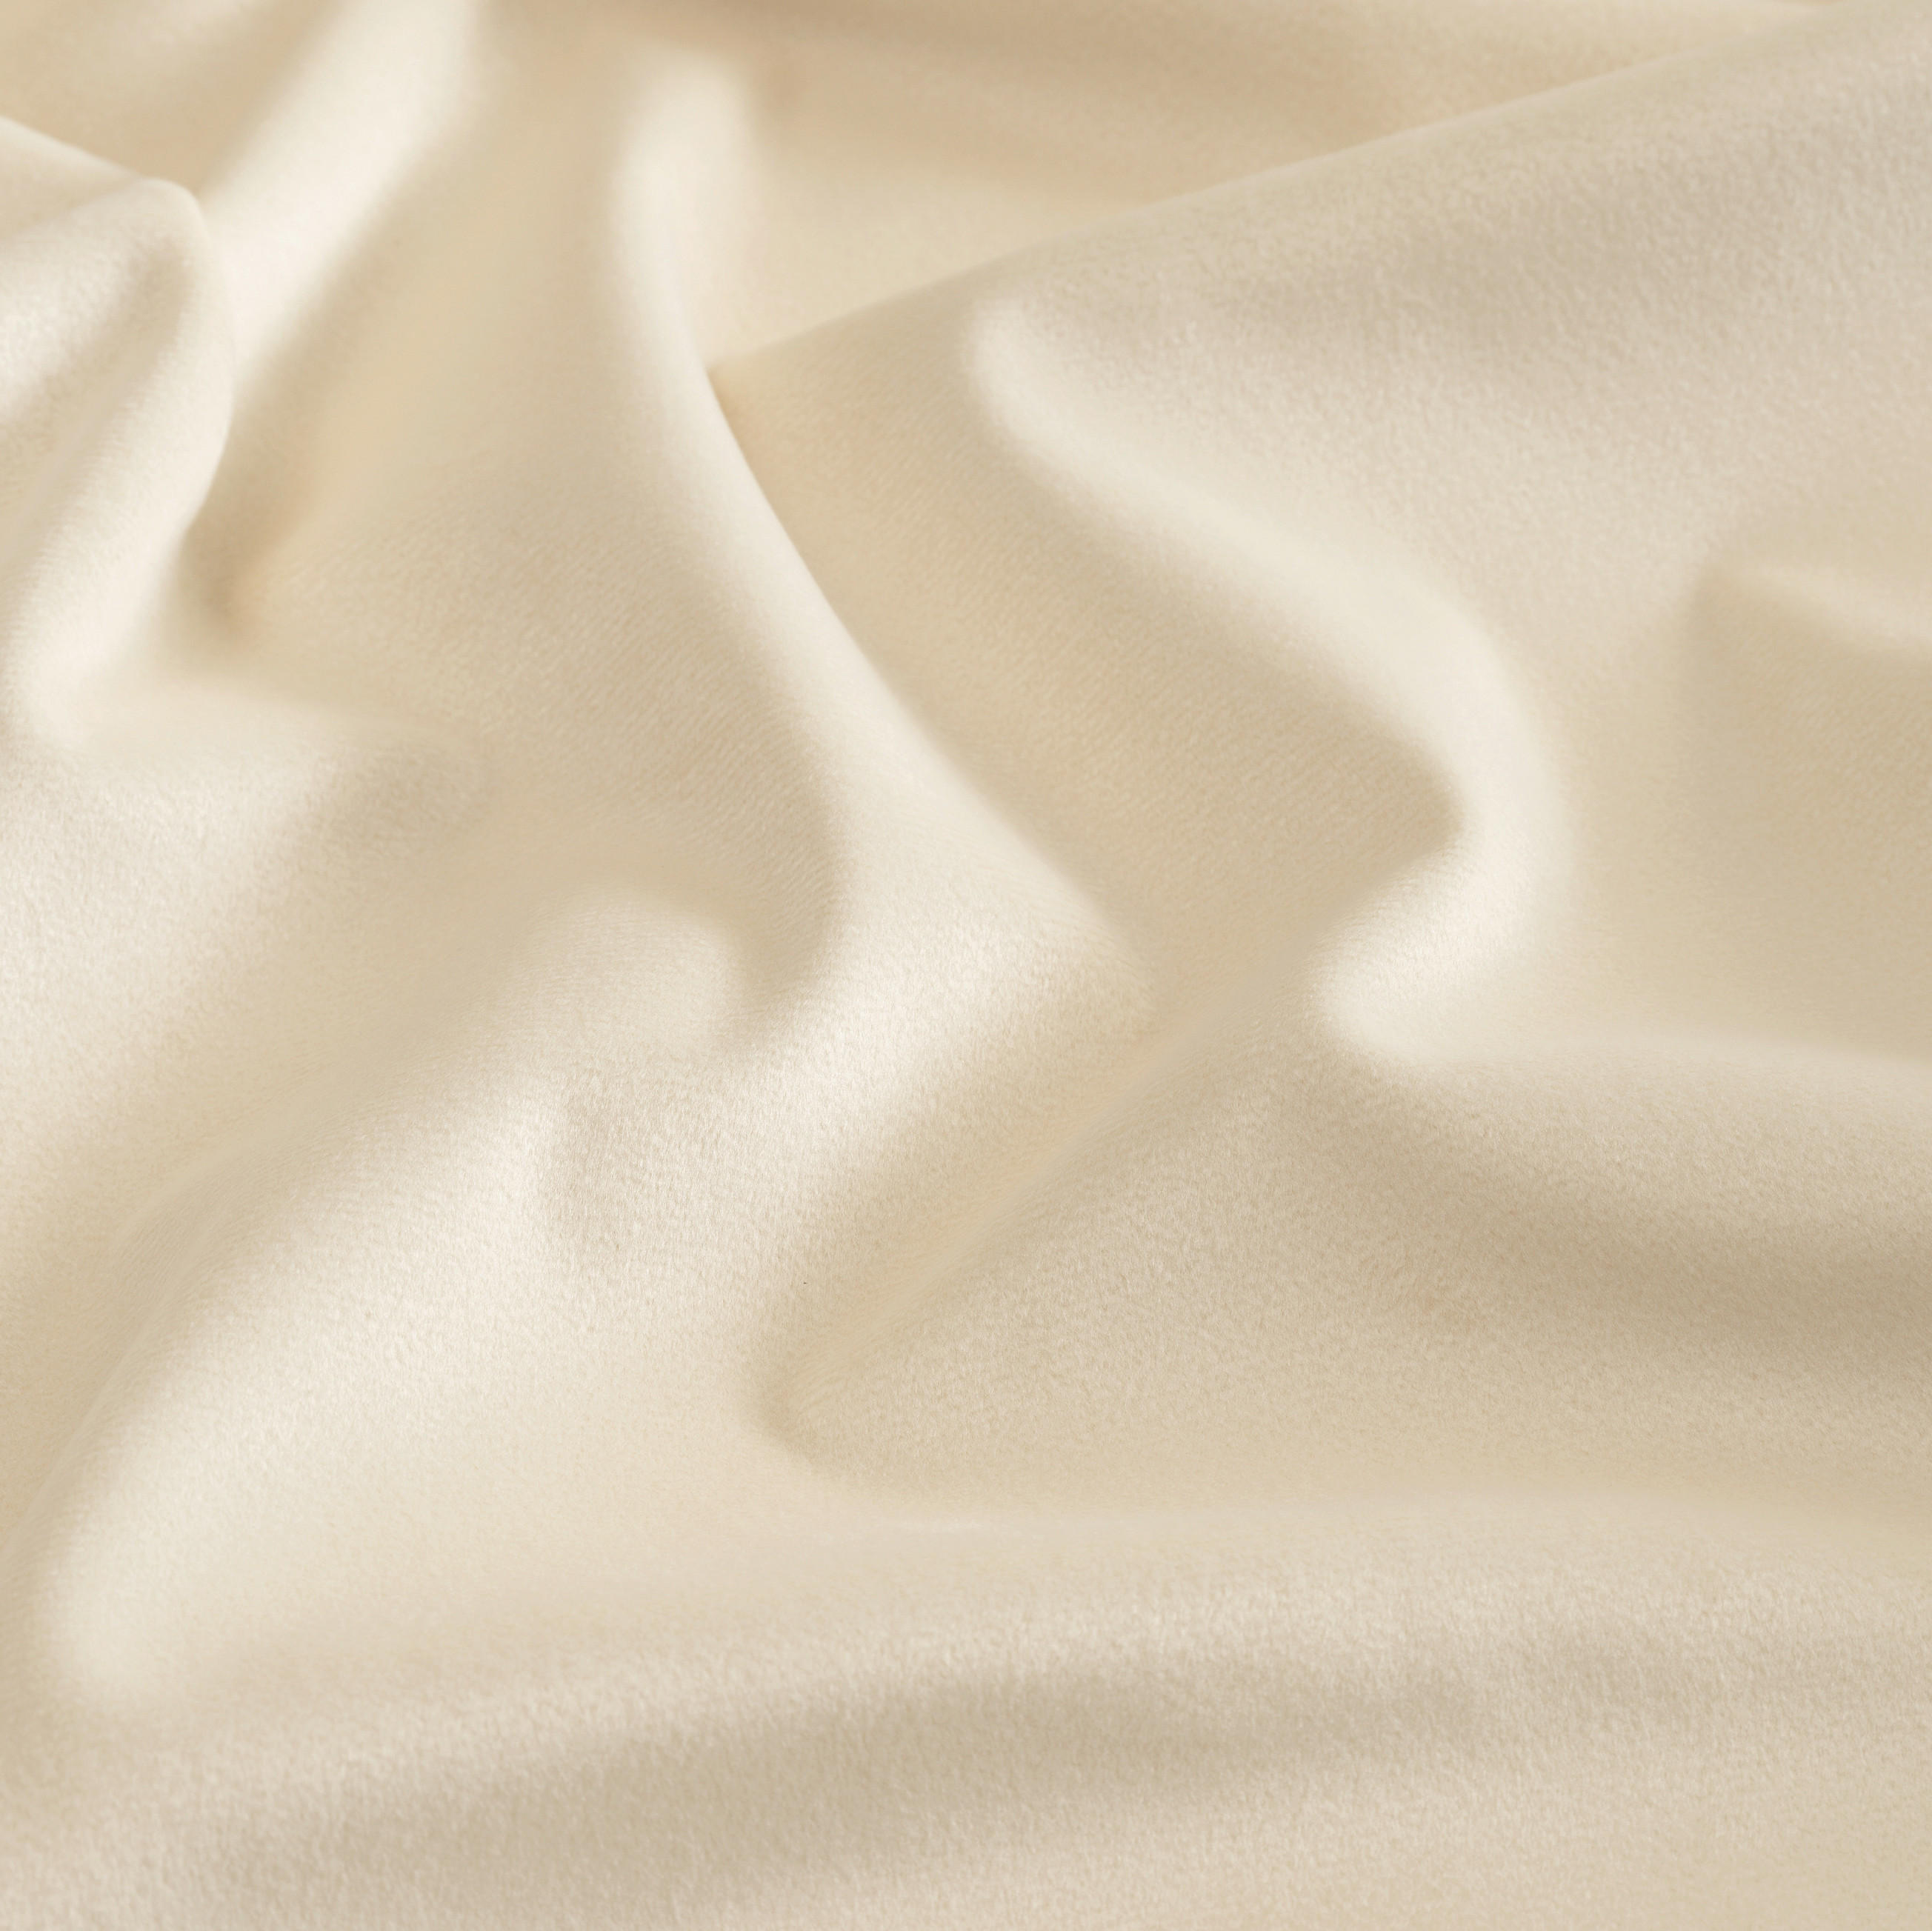 FERTIGVORHANG MR-Velvet blickdicht 130/250 cm   - Beige/Creme, Basics, Textil (130/250cm) - Musterring